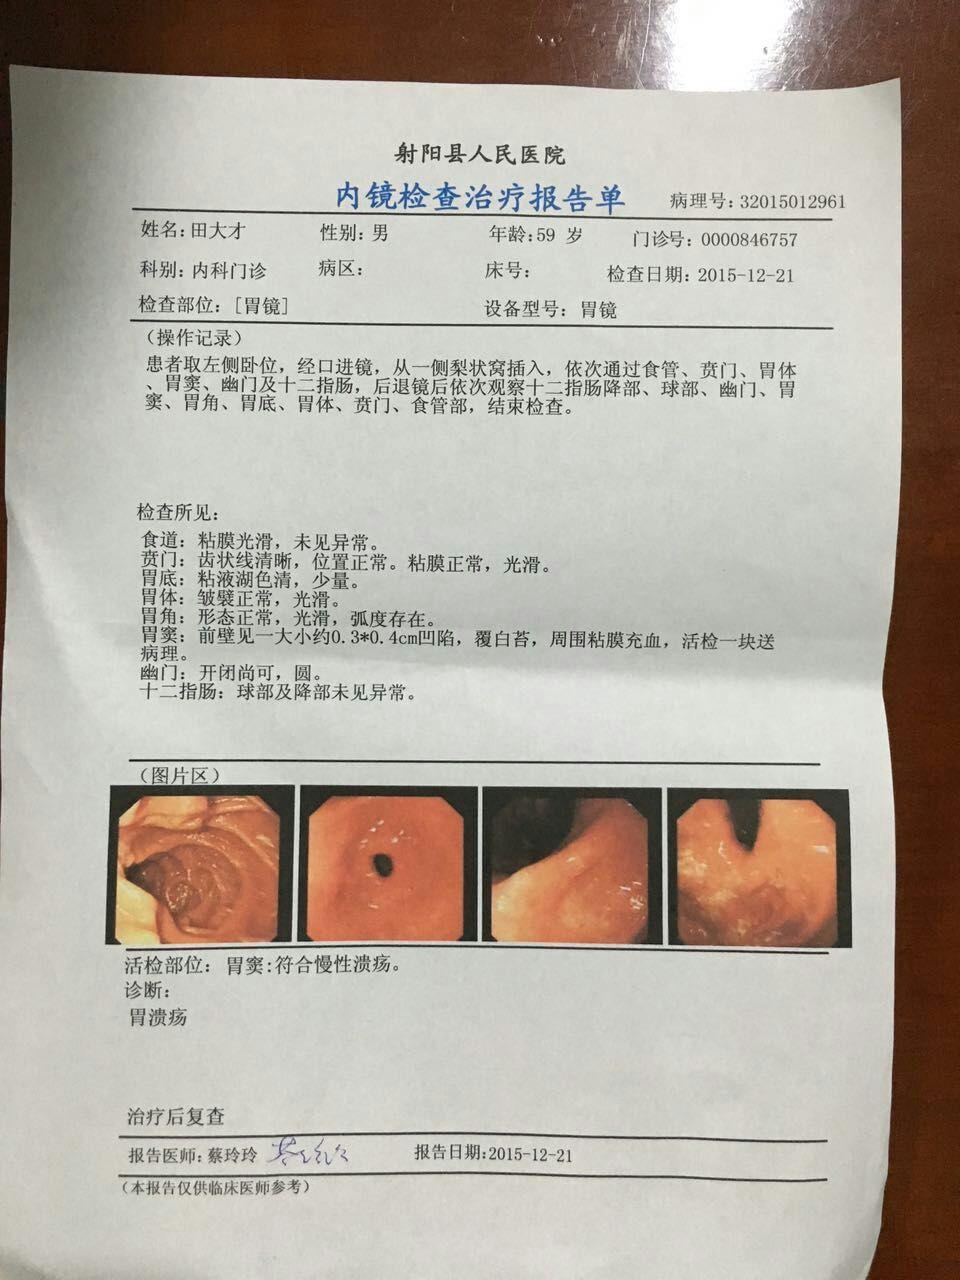 胃镜报告肿瘤图片